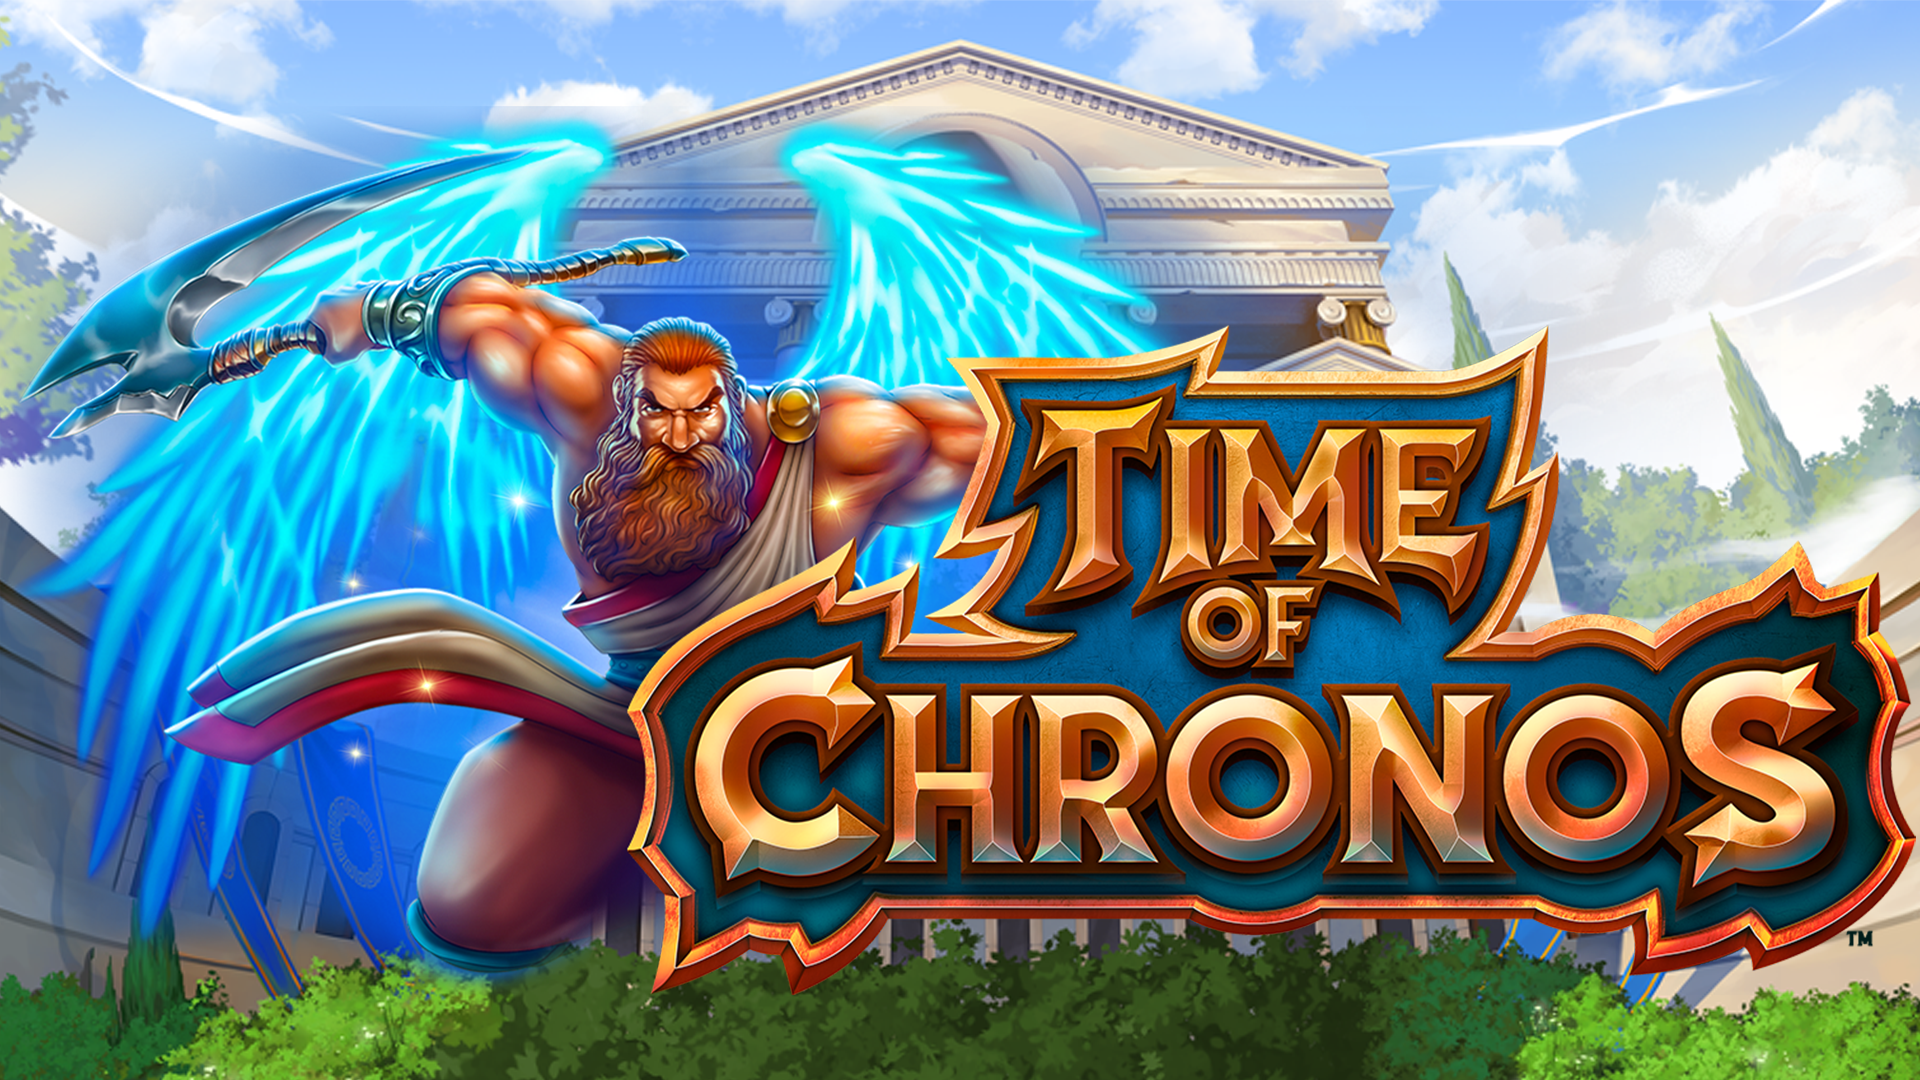 Time of Chronos